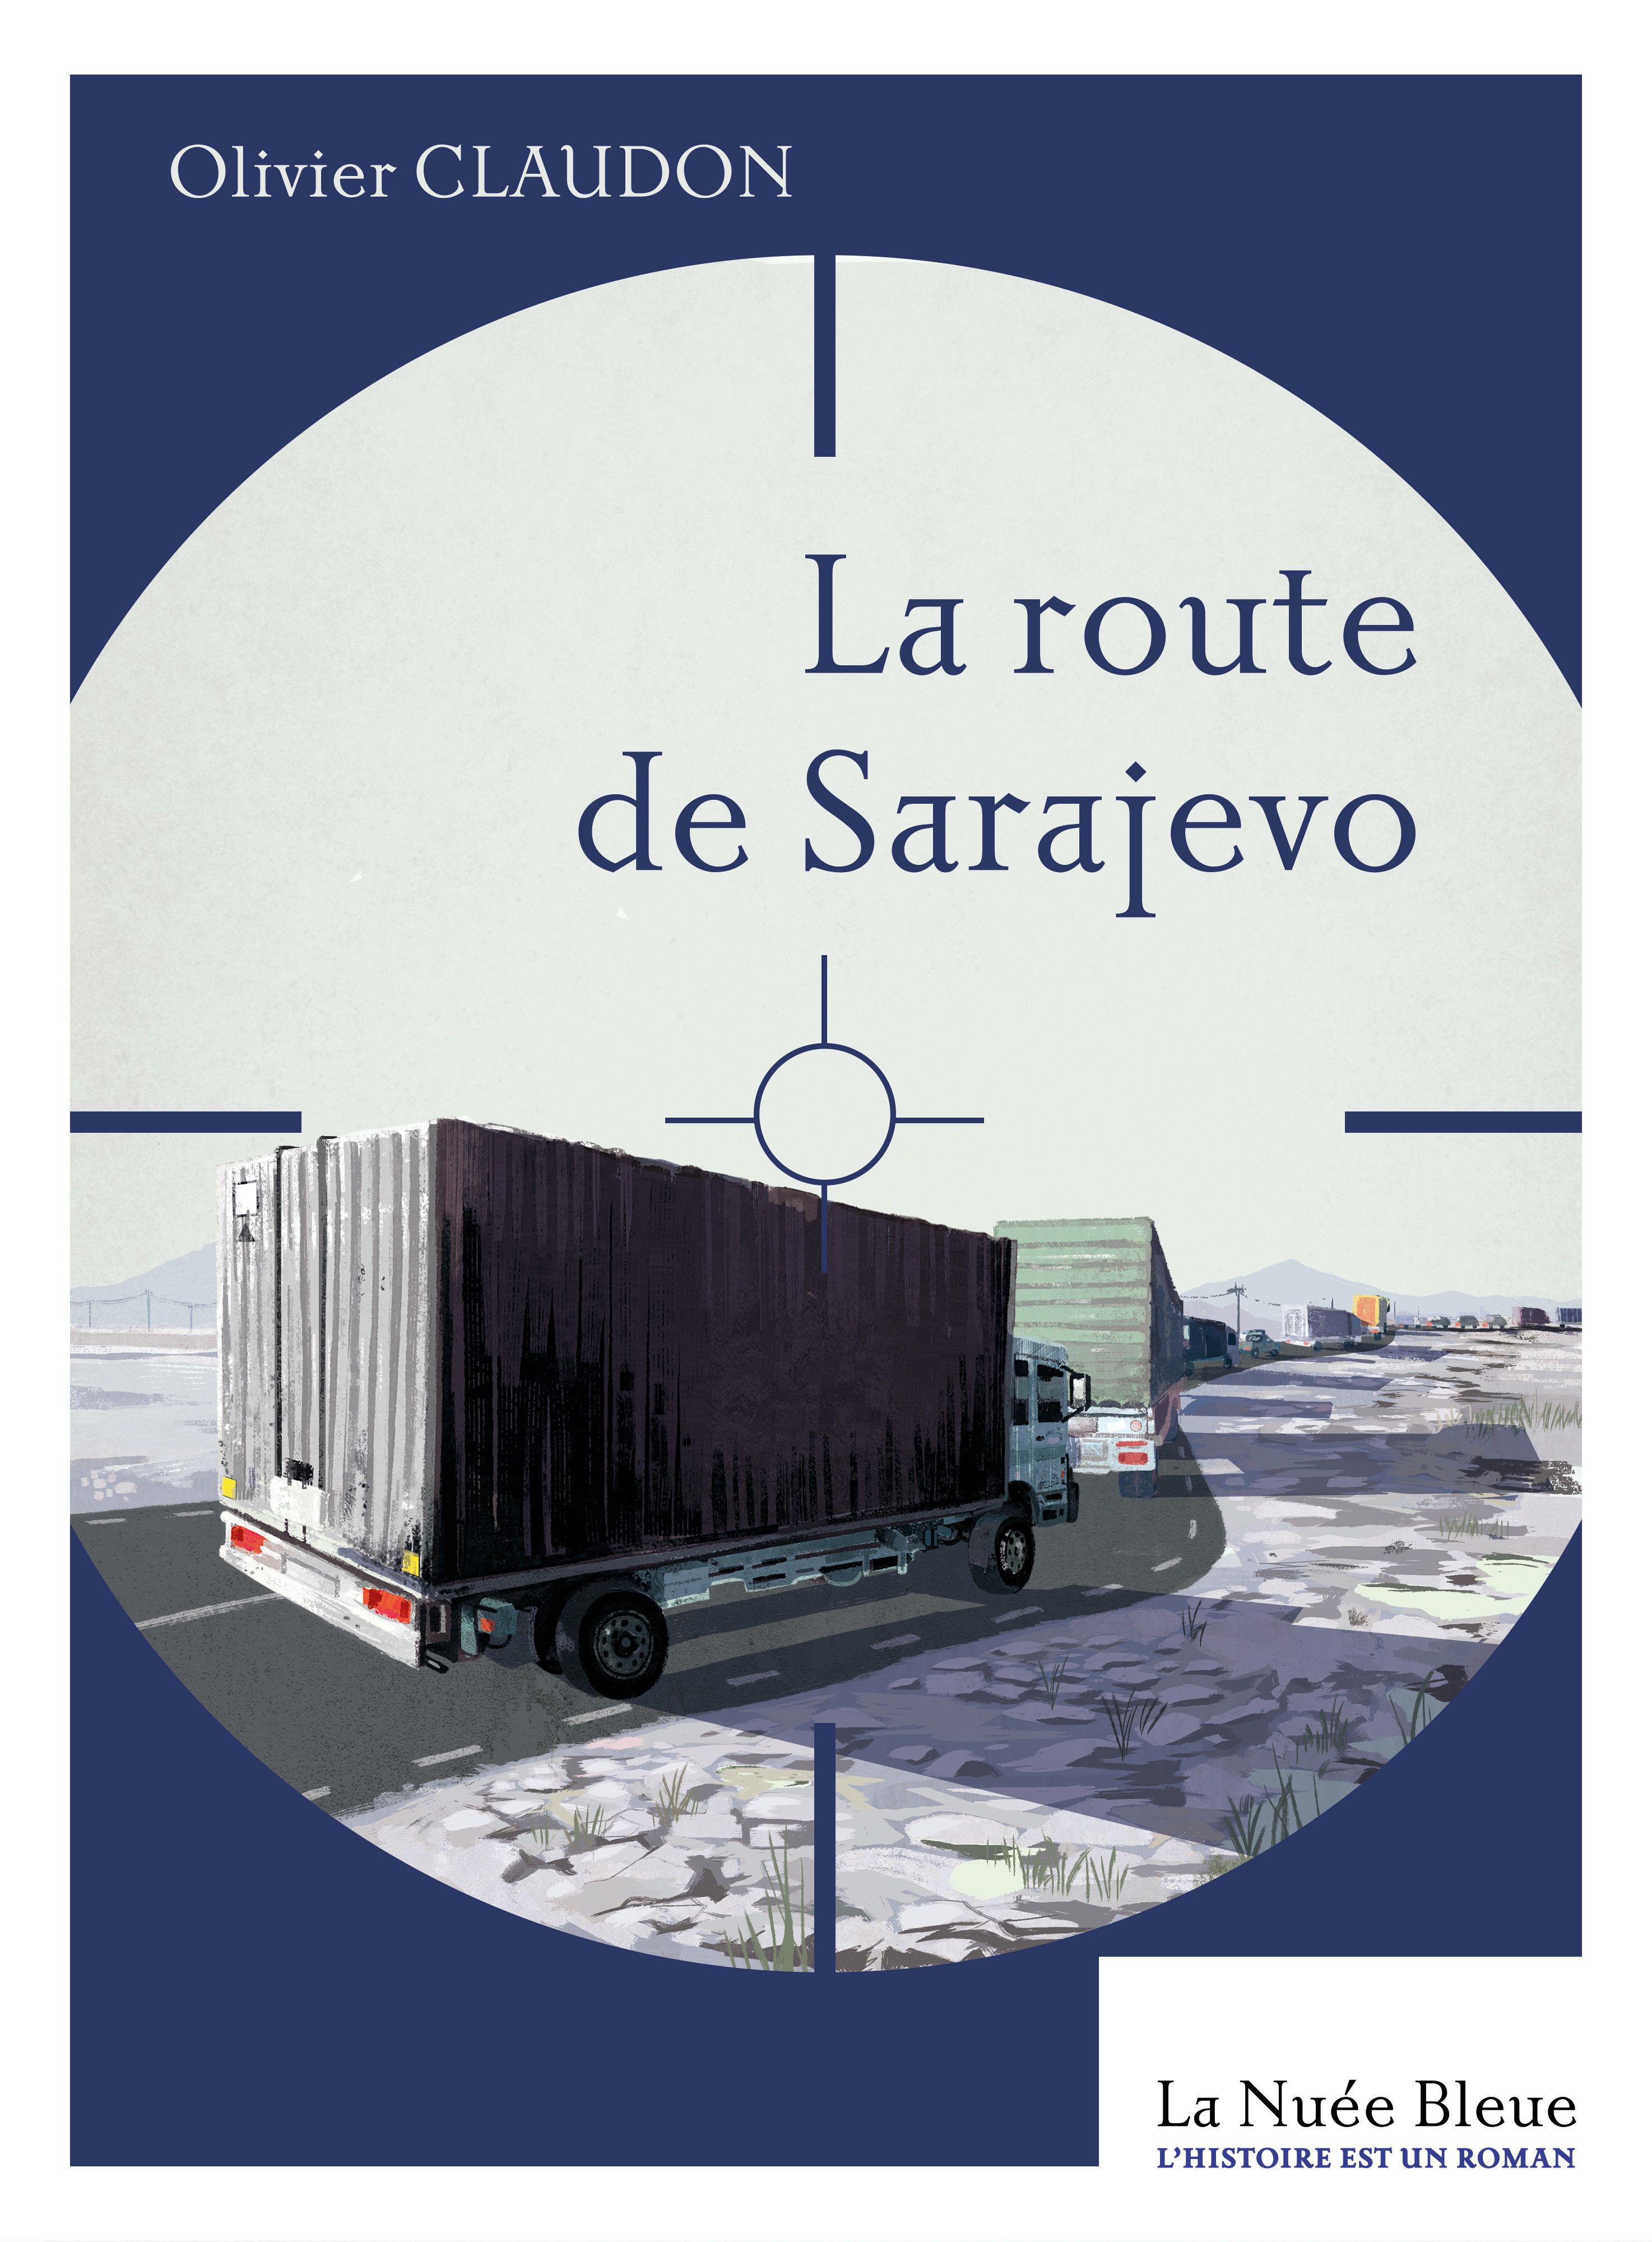 La route de Sarajevo